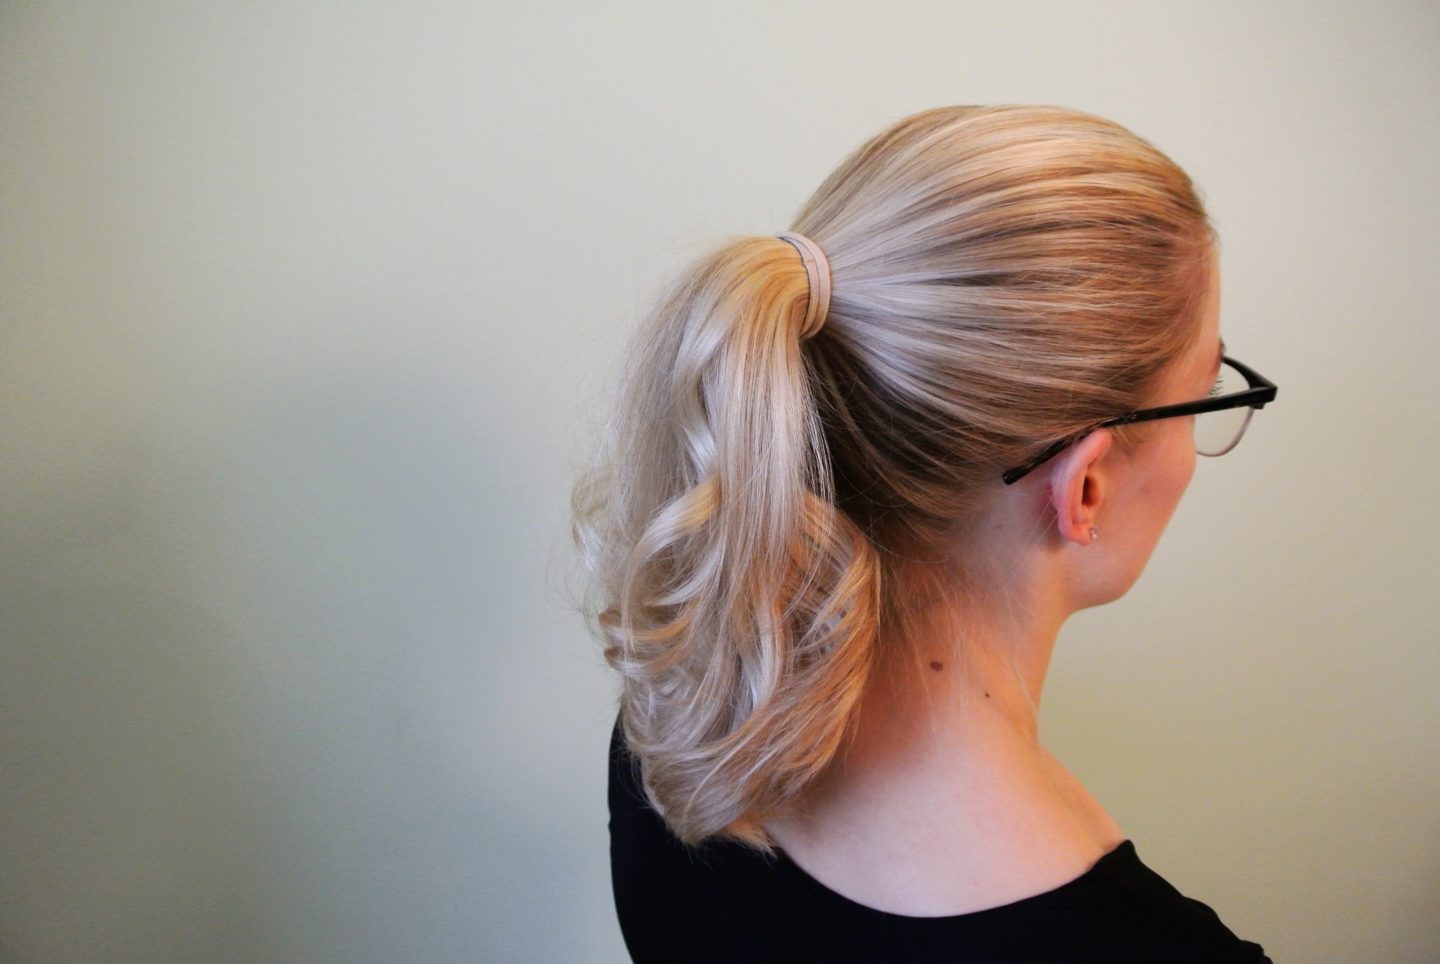 annimarian lentoemännän luottokampaukset paksu poninhäntä a thick ponytail on blond hair flight attendant hair style